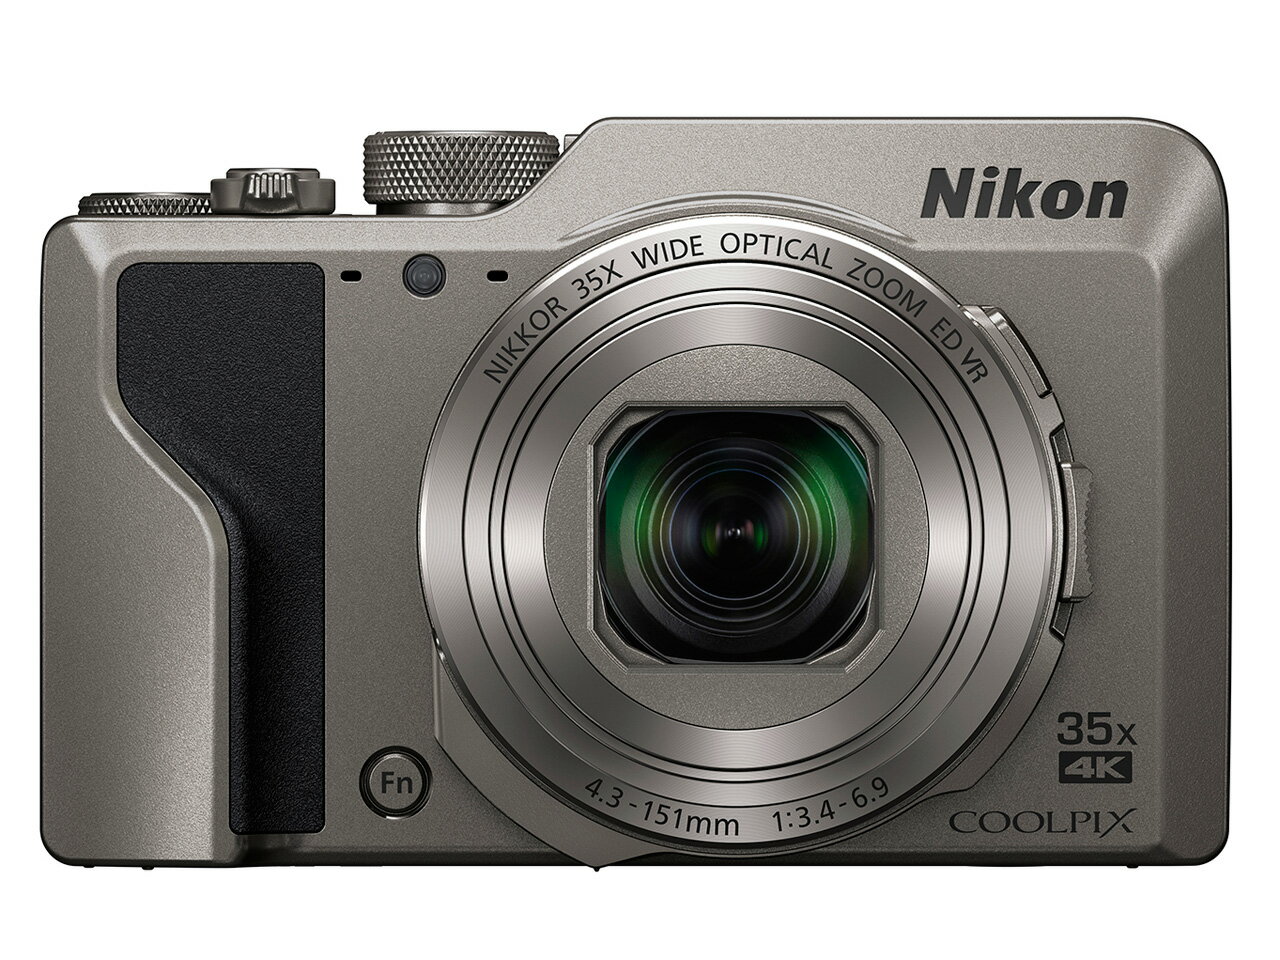 Nikon ニコン デジタルカメラ クールピクス COOLPIX A1000 シルバー 新品 送料無料